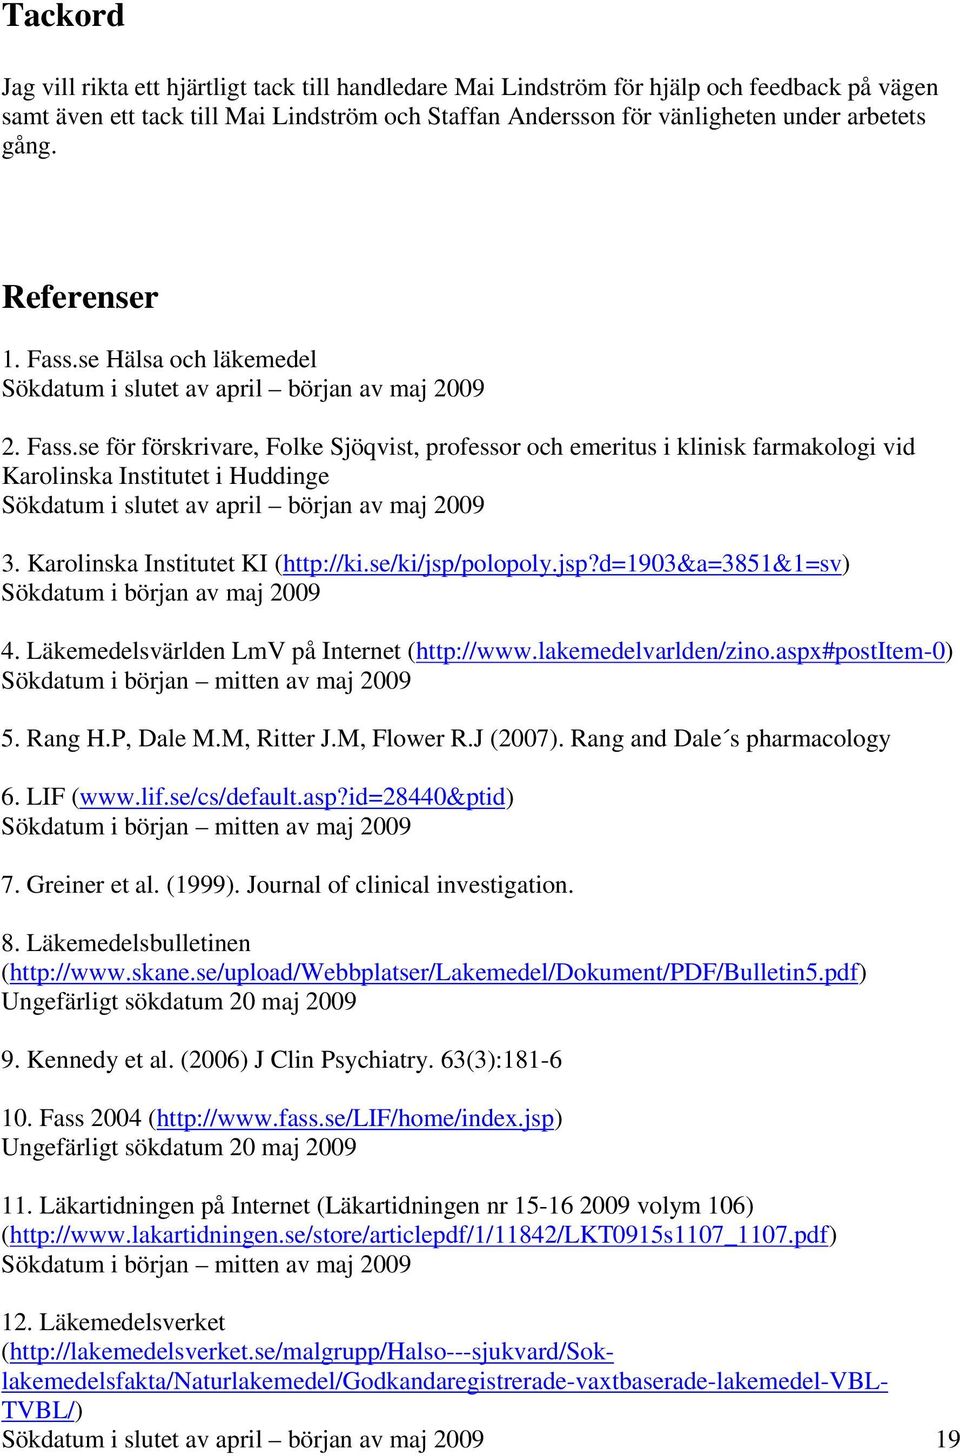 Karolinska Institutet KI (http://ki.se/ki/jsp/polopoly.jsp?d=1903&a=3851&1=sv) Sökdatum i början av maj 2009 4. Läkemedelsvärlden LmV på Internet (http://www.lakemedelvarlden/zino.